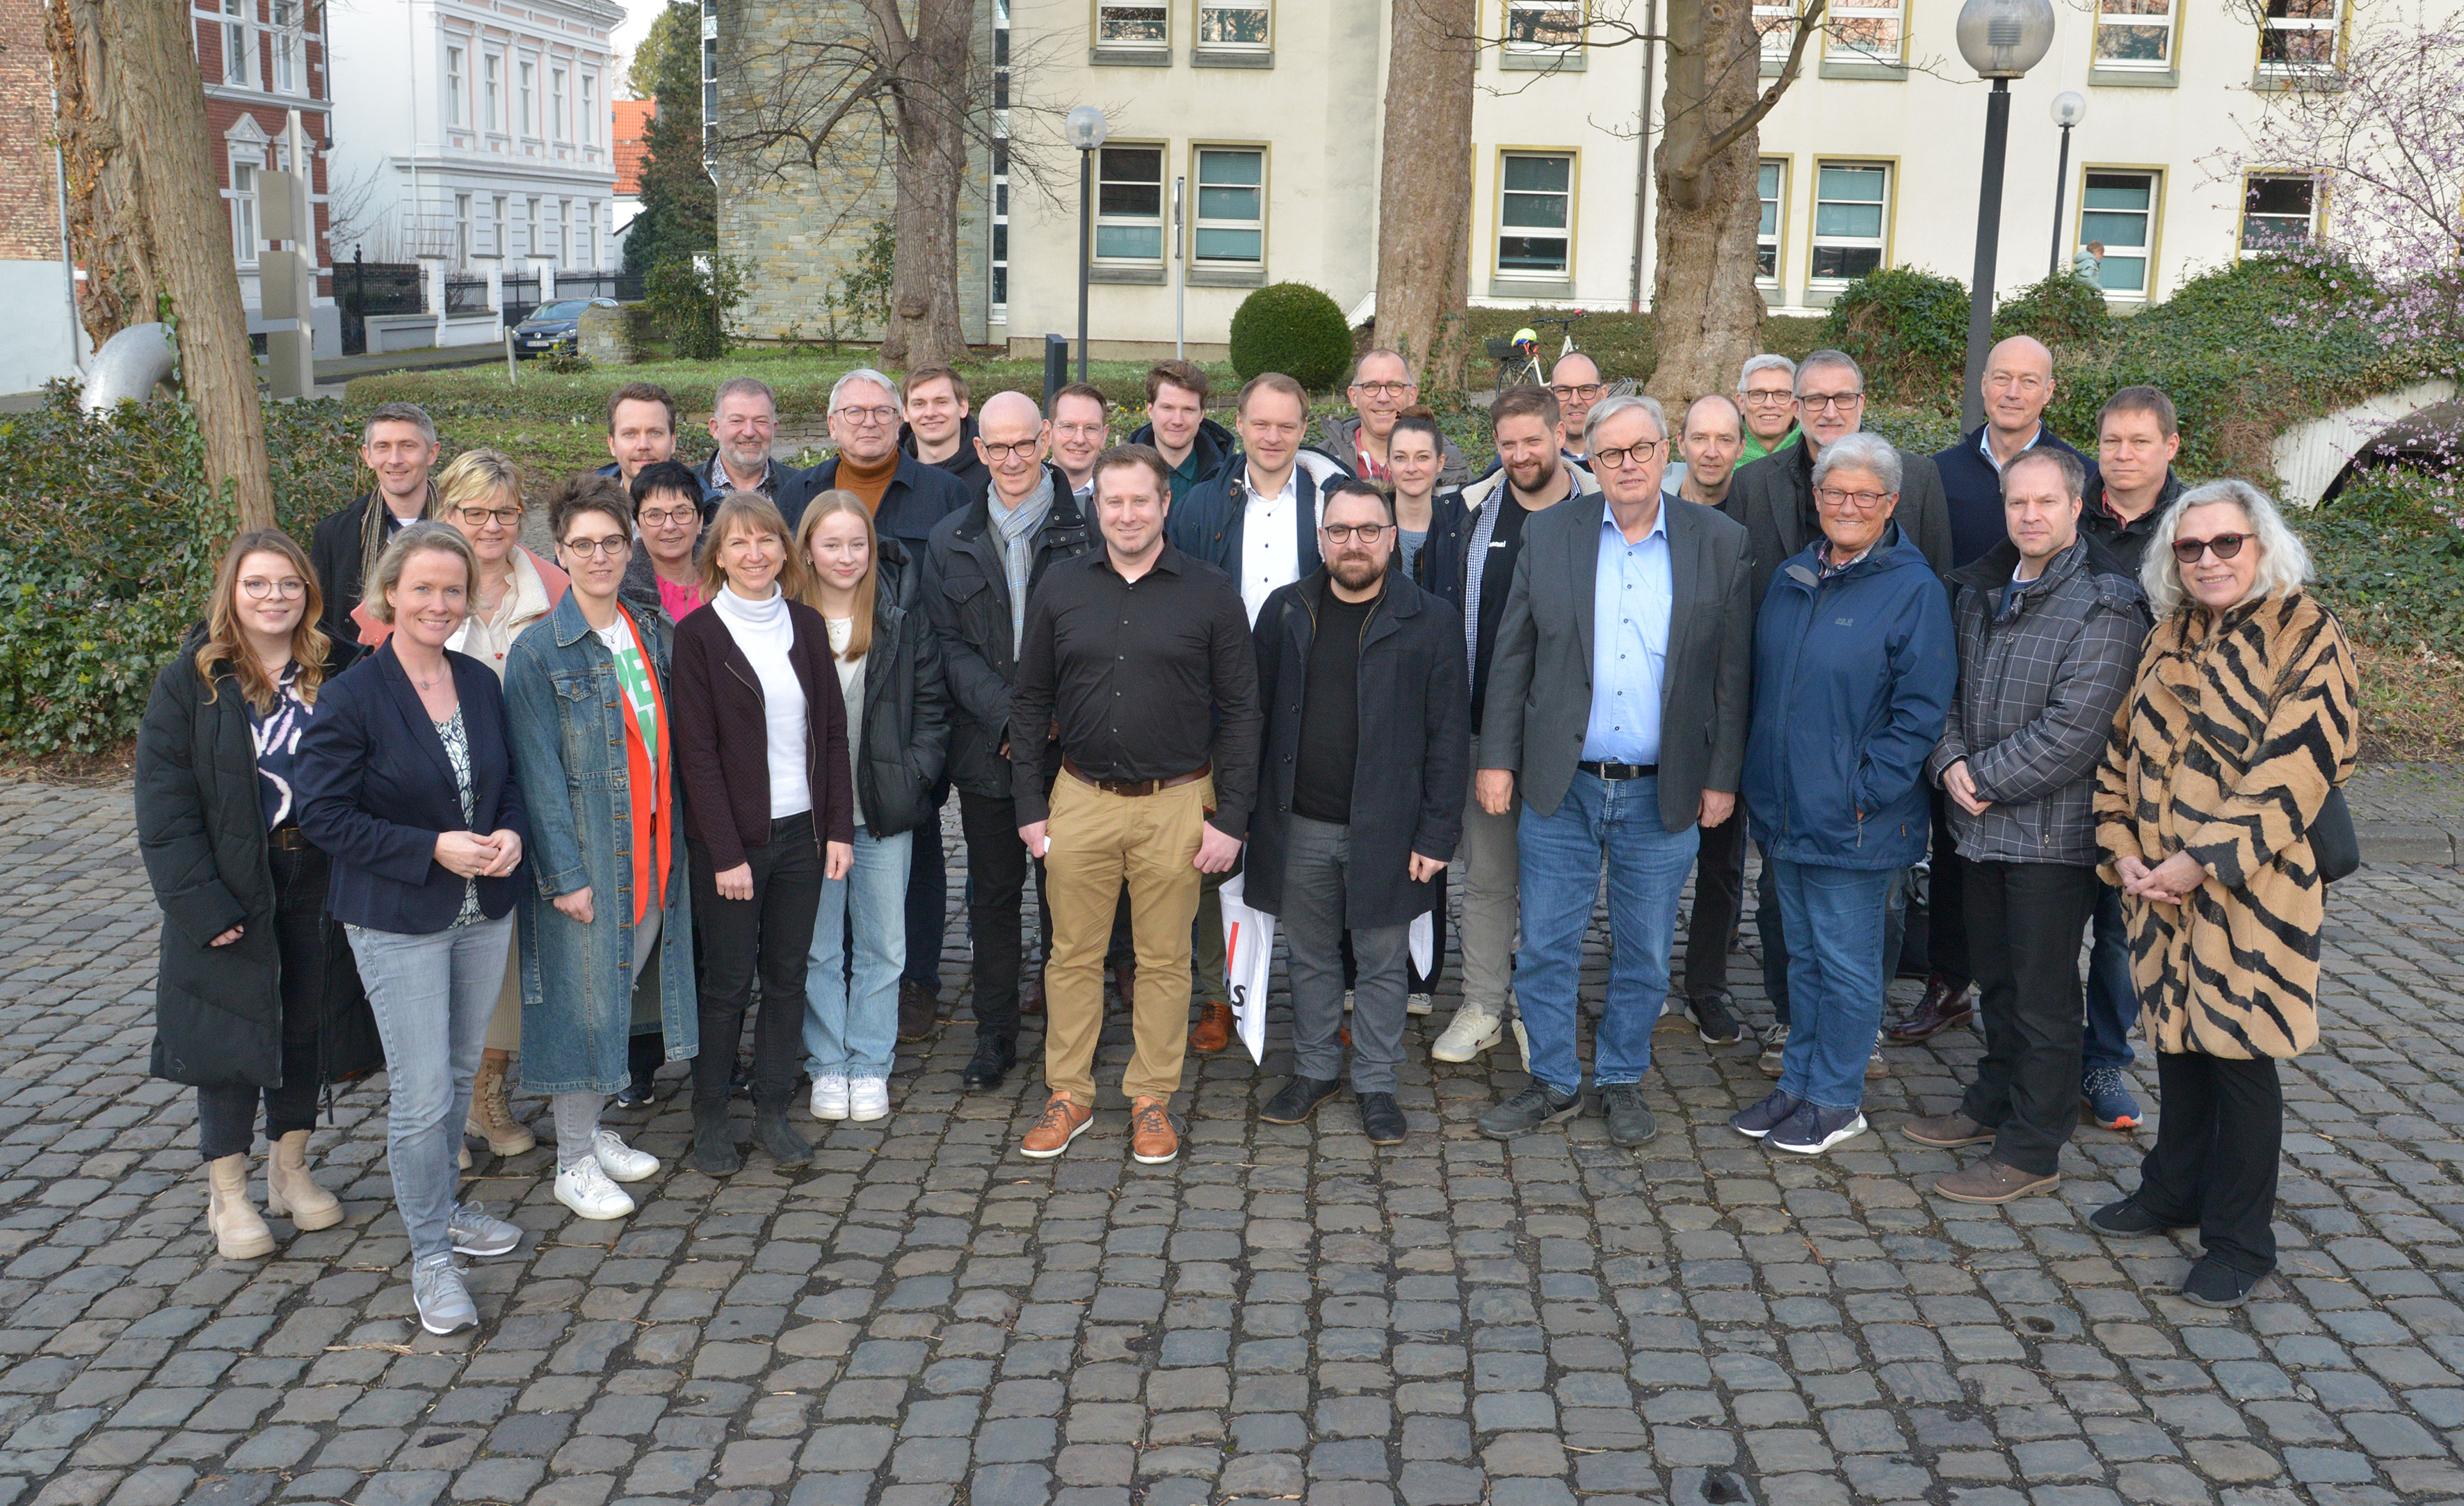 35 Pressereferenten im Kreishaus - Arbeitskreis des Landkreistages zu Gast in Soest - Austausch zum Thema Künstliche Intelligenz (KI)